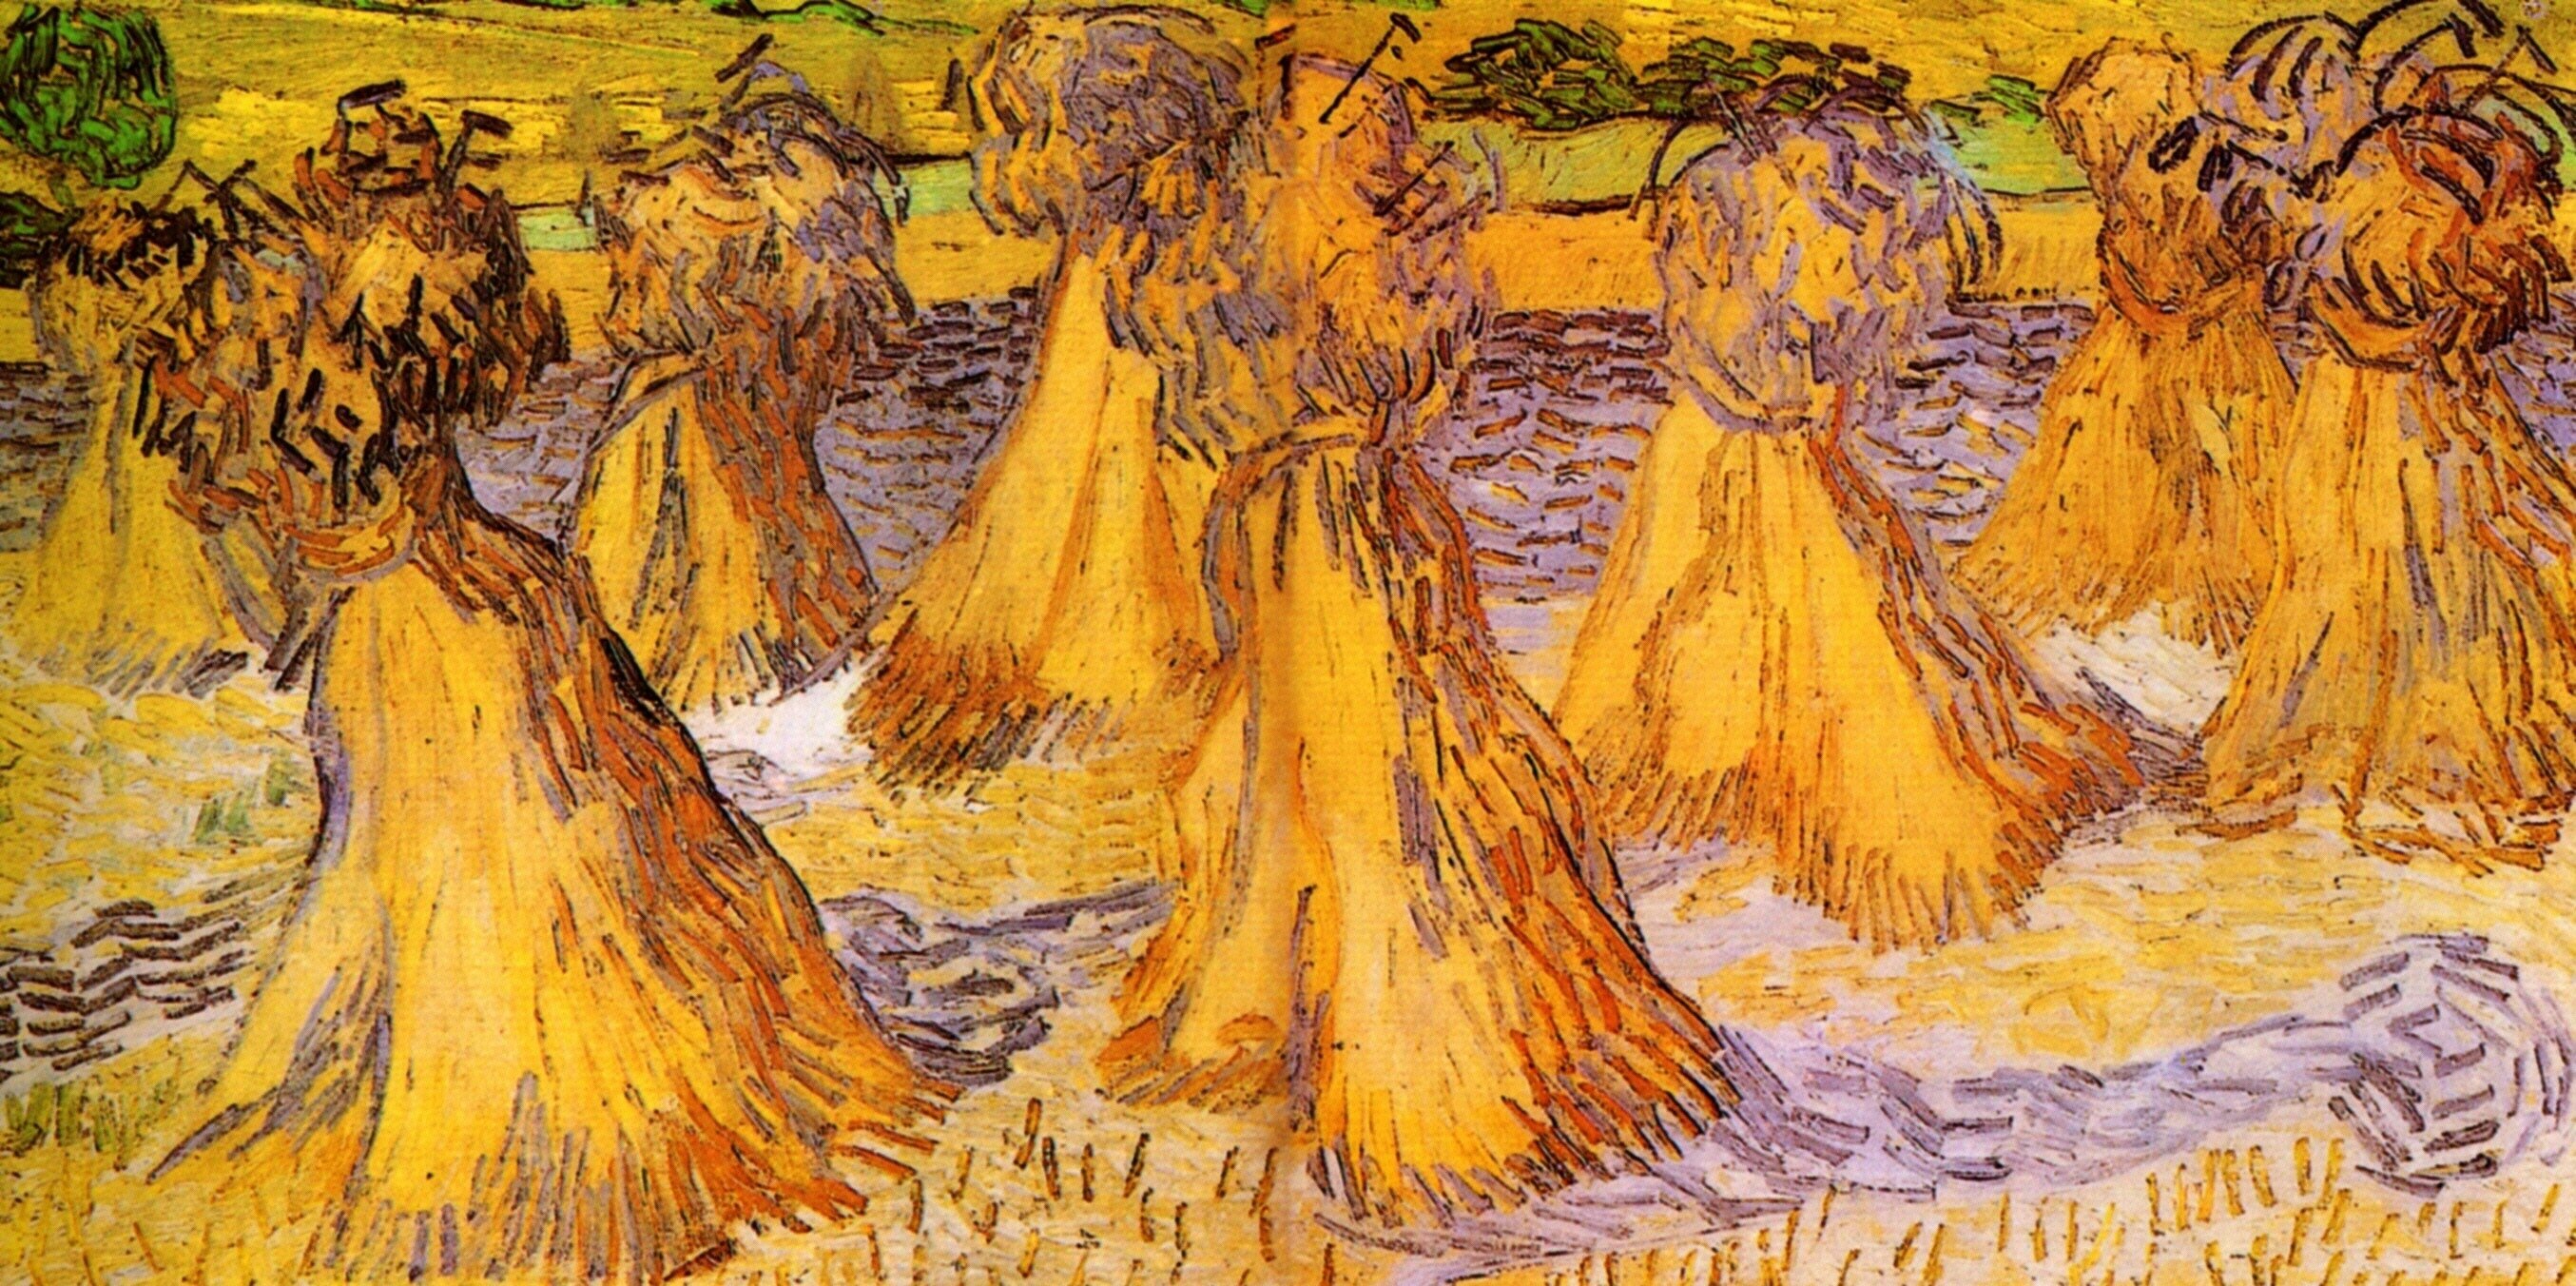  Ван Гог Поле с пшеничными скирдами 